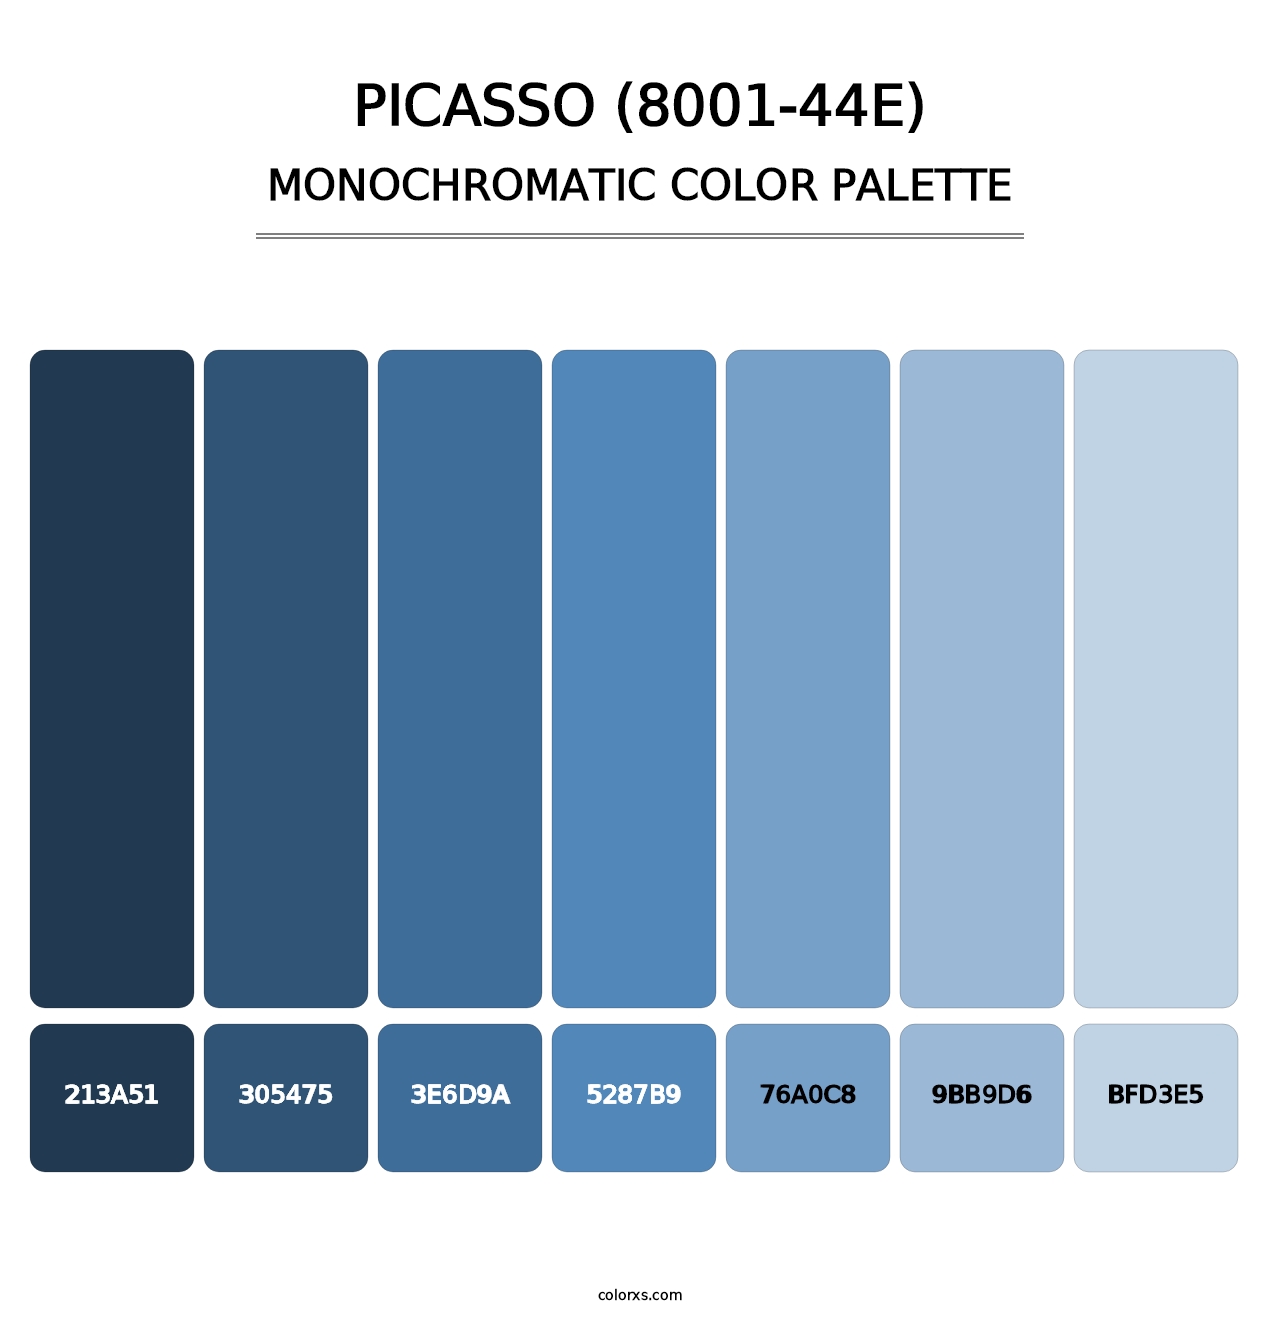 Picasso (8001-44E) - Monochromatic Color Palette